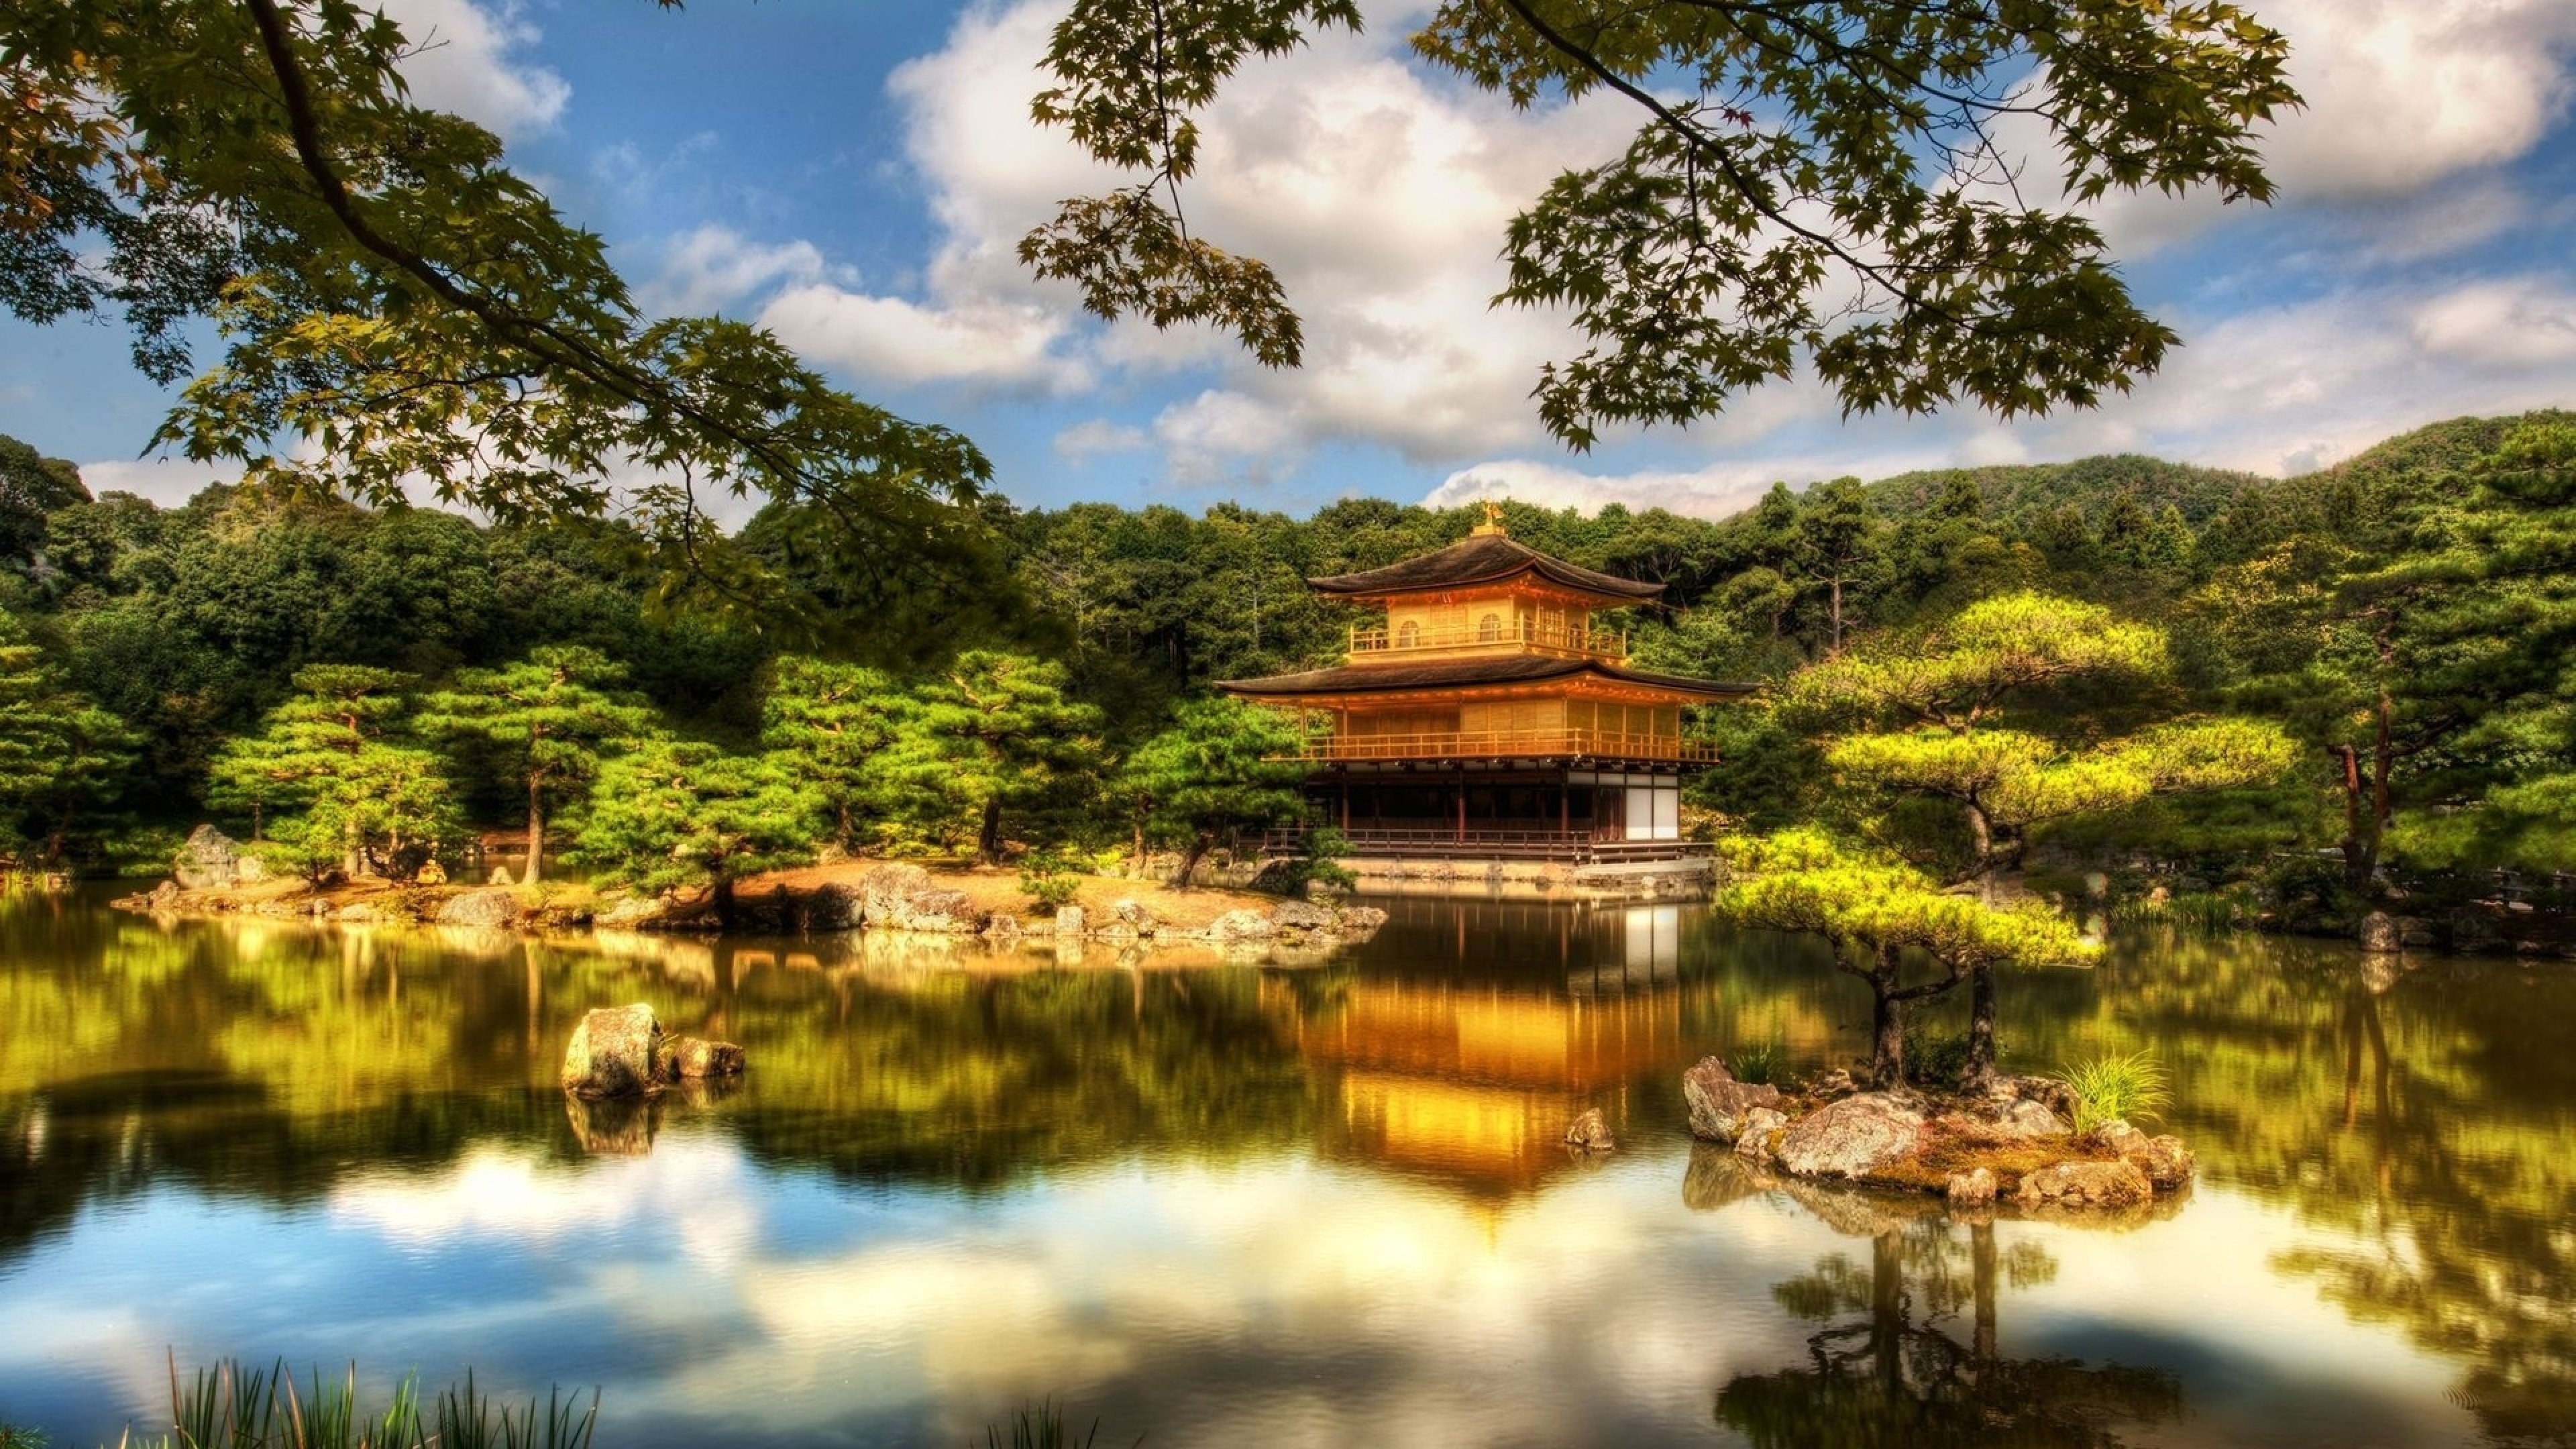  Japan Mirabell Gardens Austria Wallpaper Background 4K Ultra HD